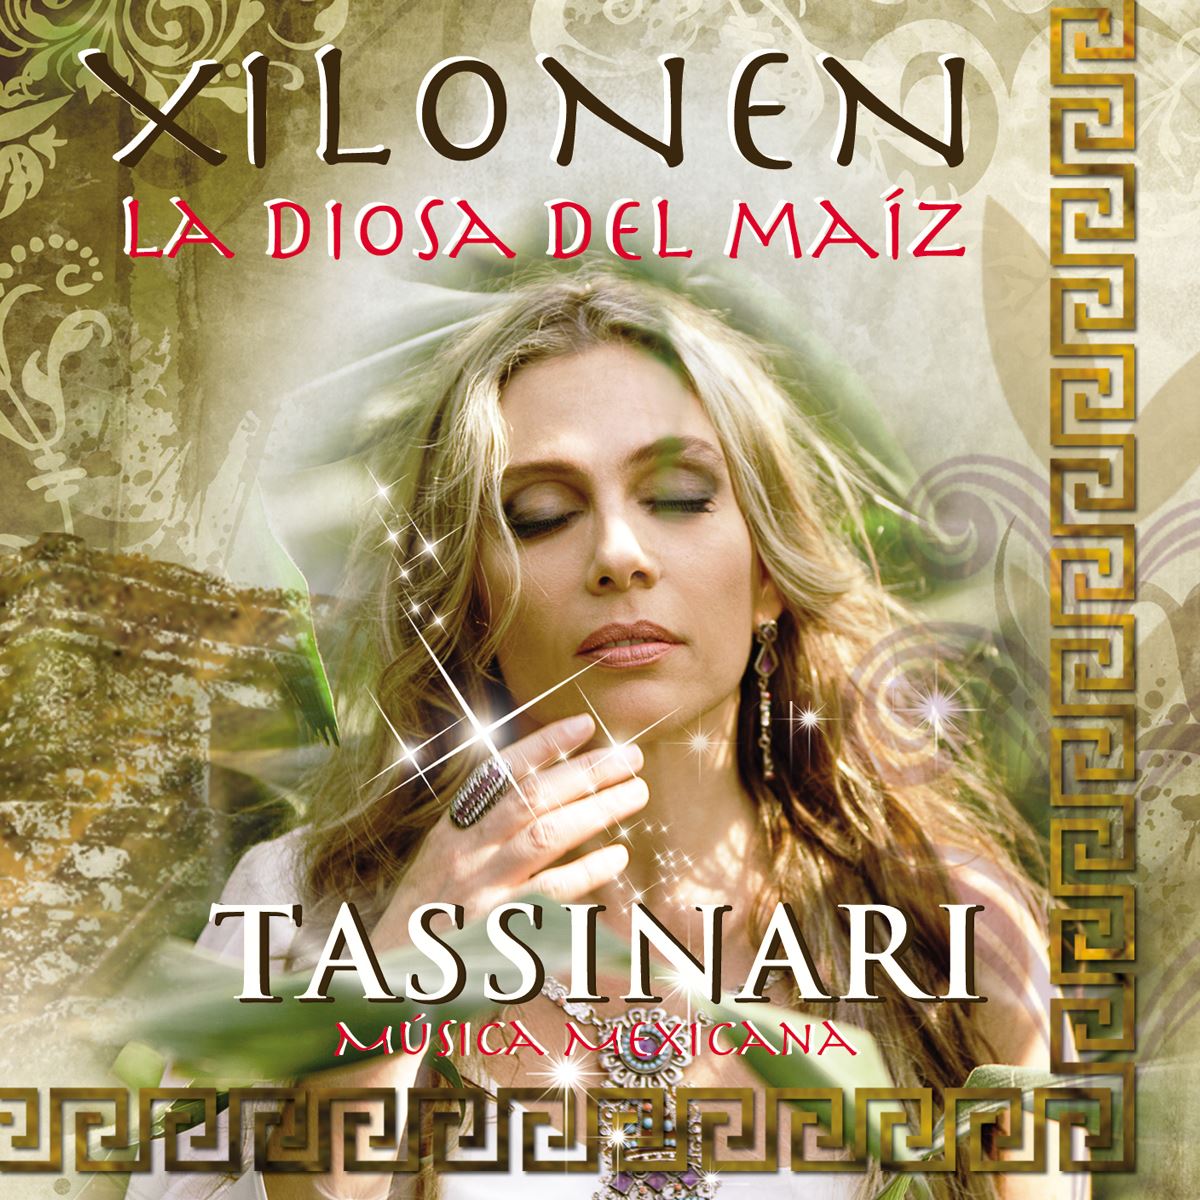 CD Tassinari-Xilonen La Diosa Del Maiz